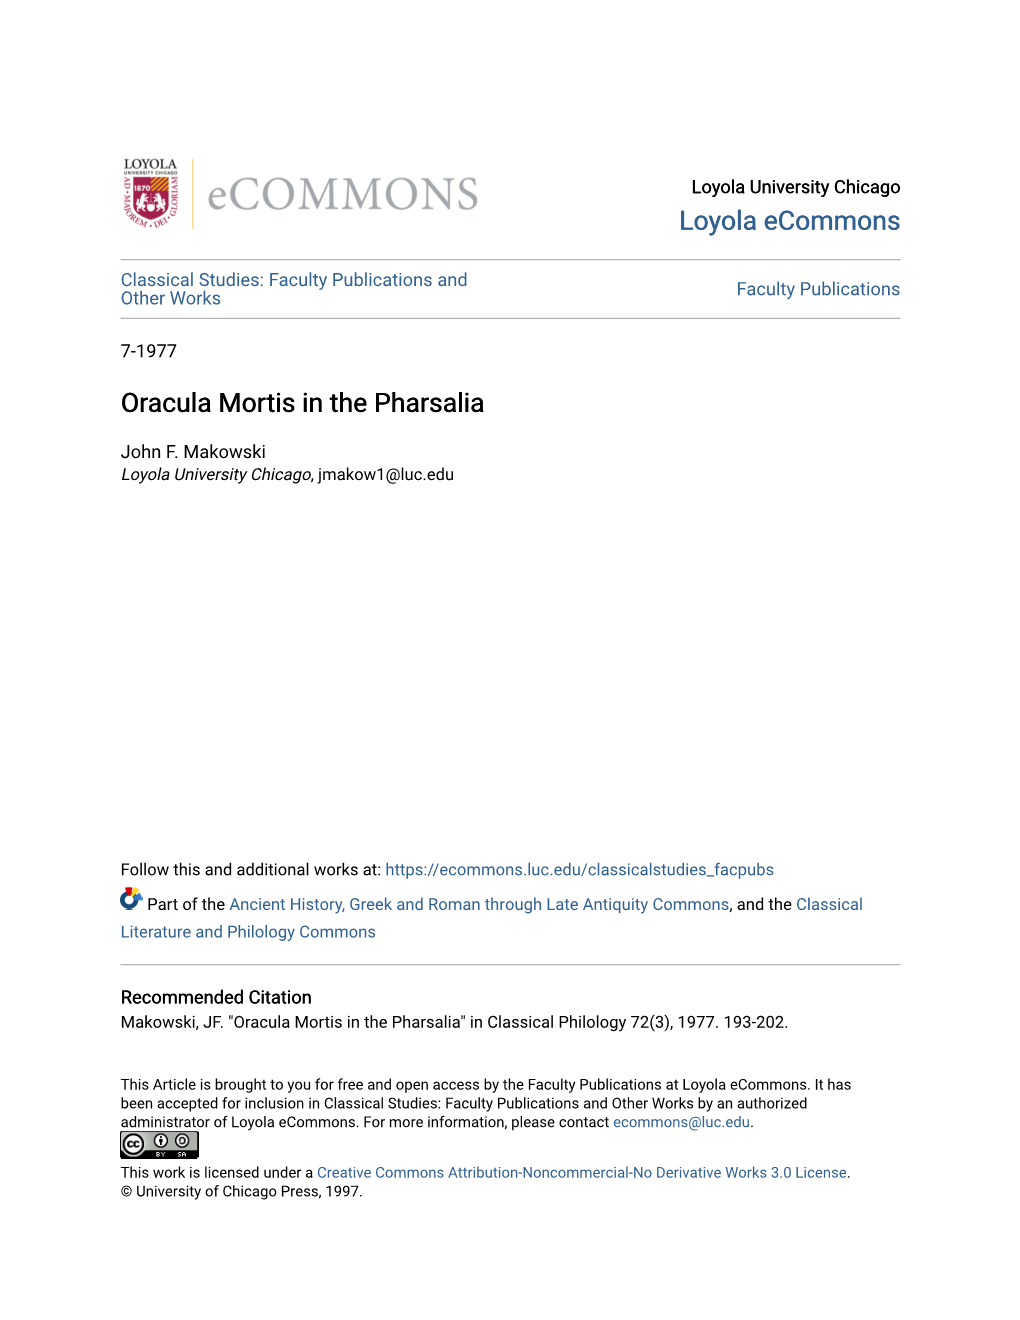 Oracula Mortis in the Pharsalia